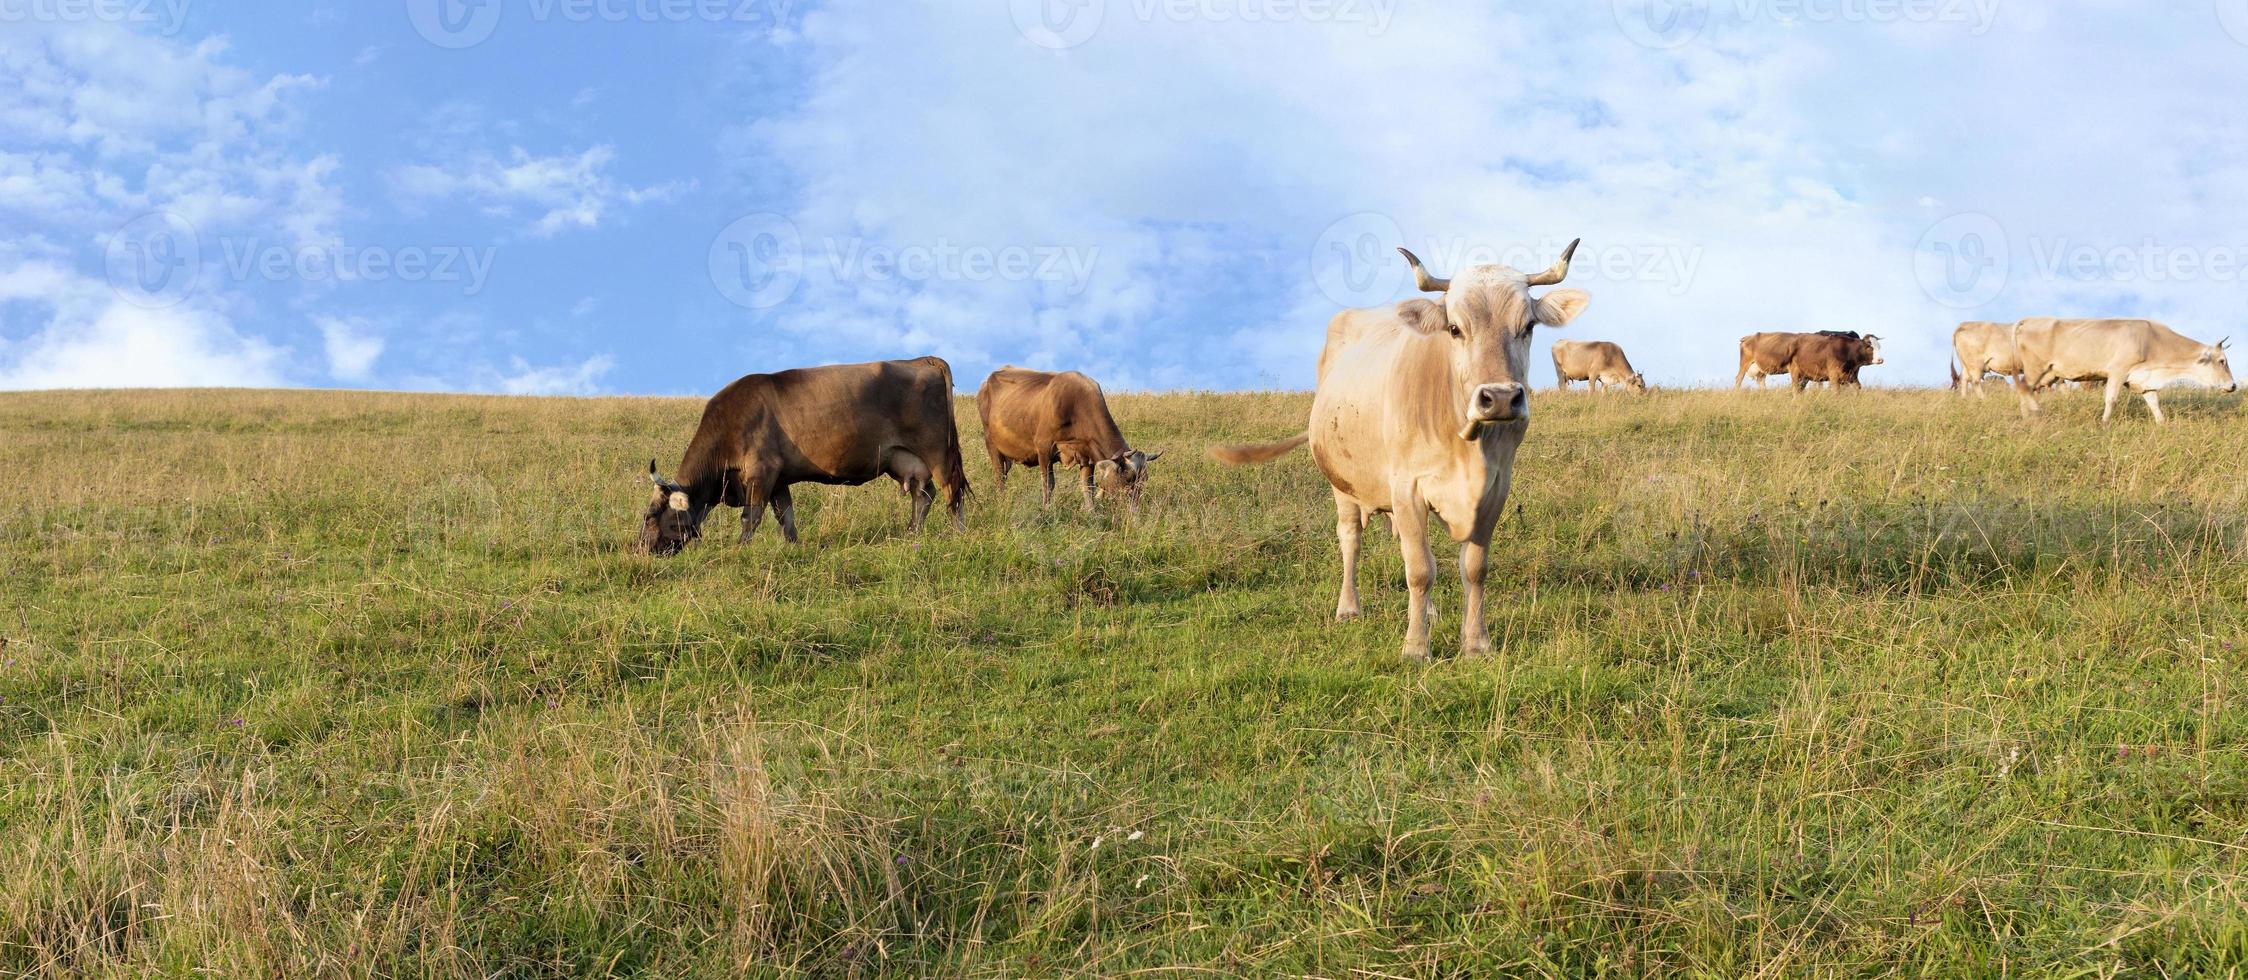 eine Herde Kühe, die auf einem Hügel mit grüner Bergwiese weiden lassen foto